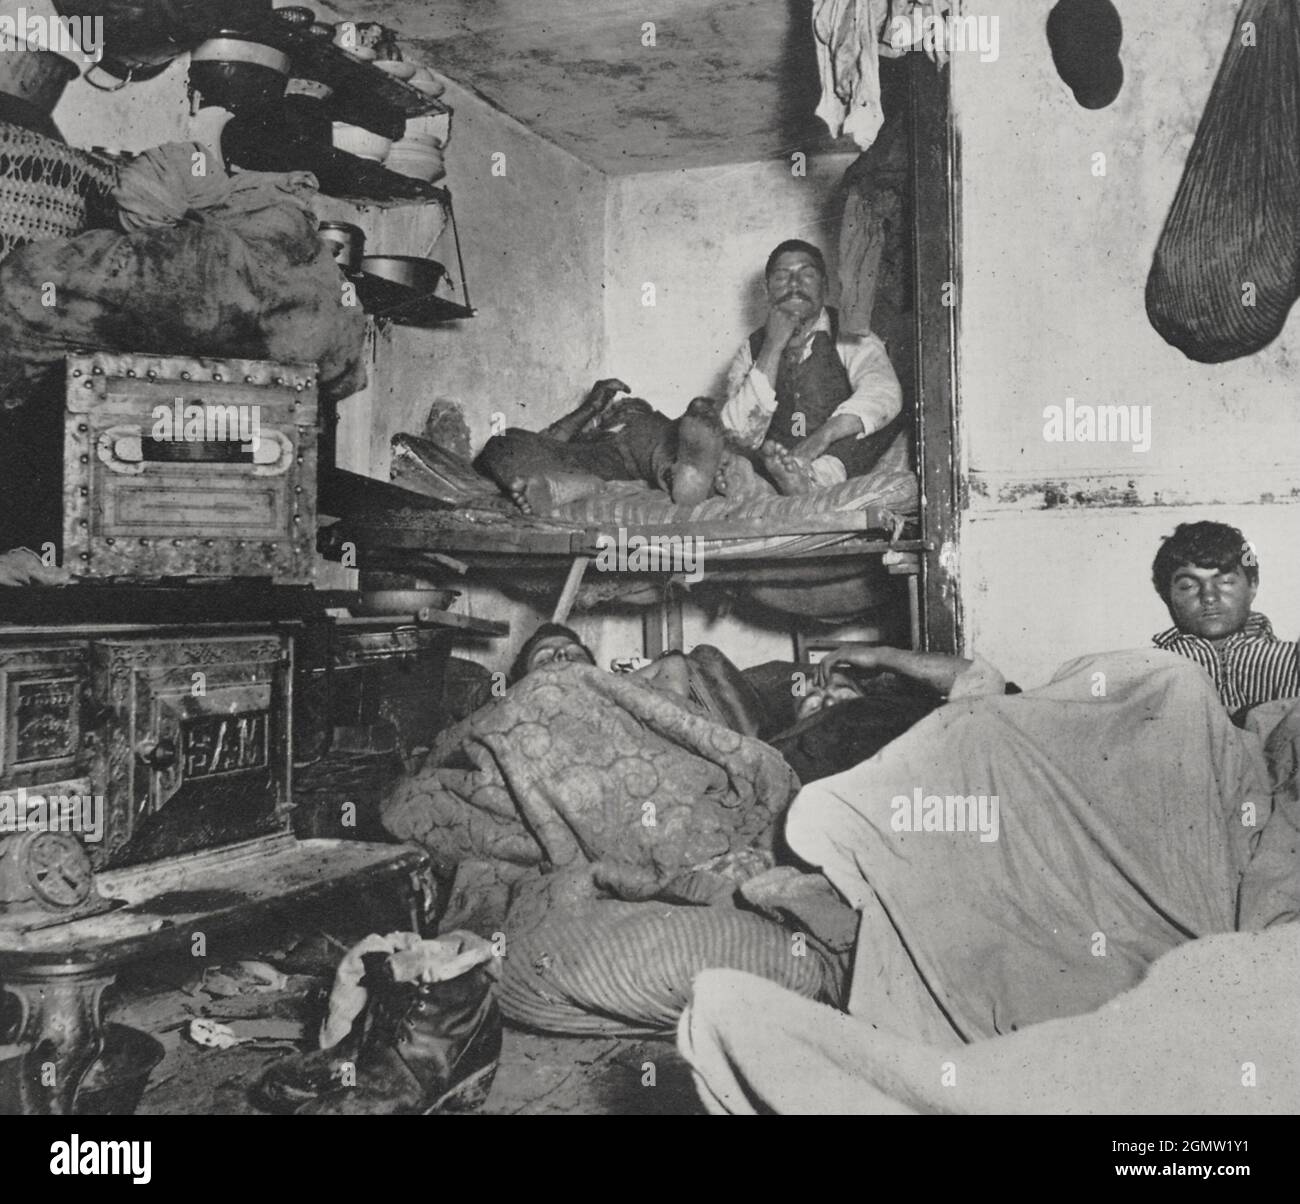 Jacob Riis Fotografie - unerlaubte Unterkunft für 5 Cent pro Nacht - Slum  Bewohner Stockfotografie - Alamy